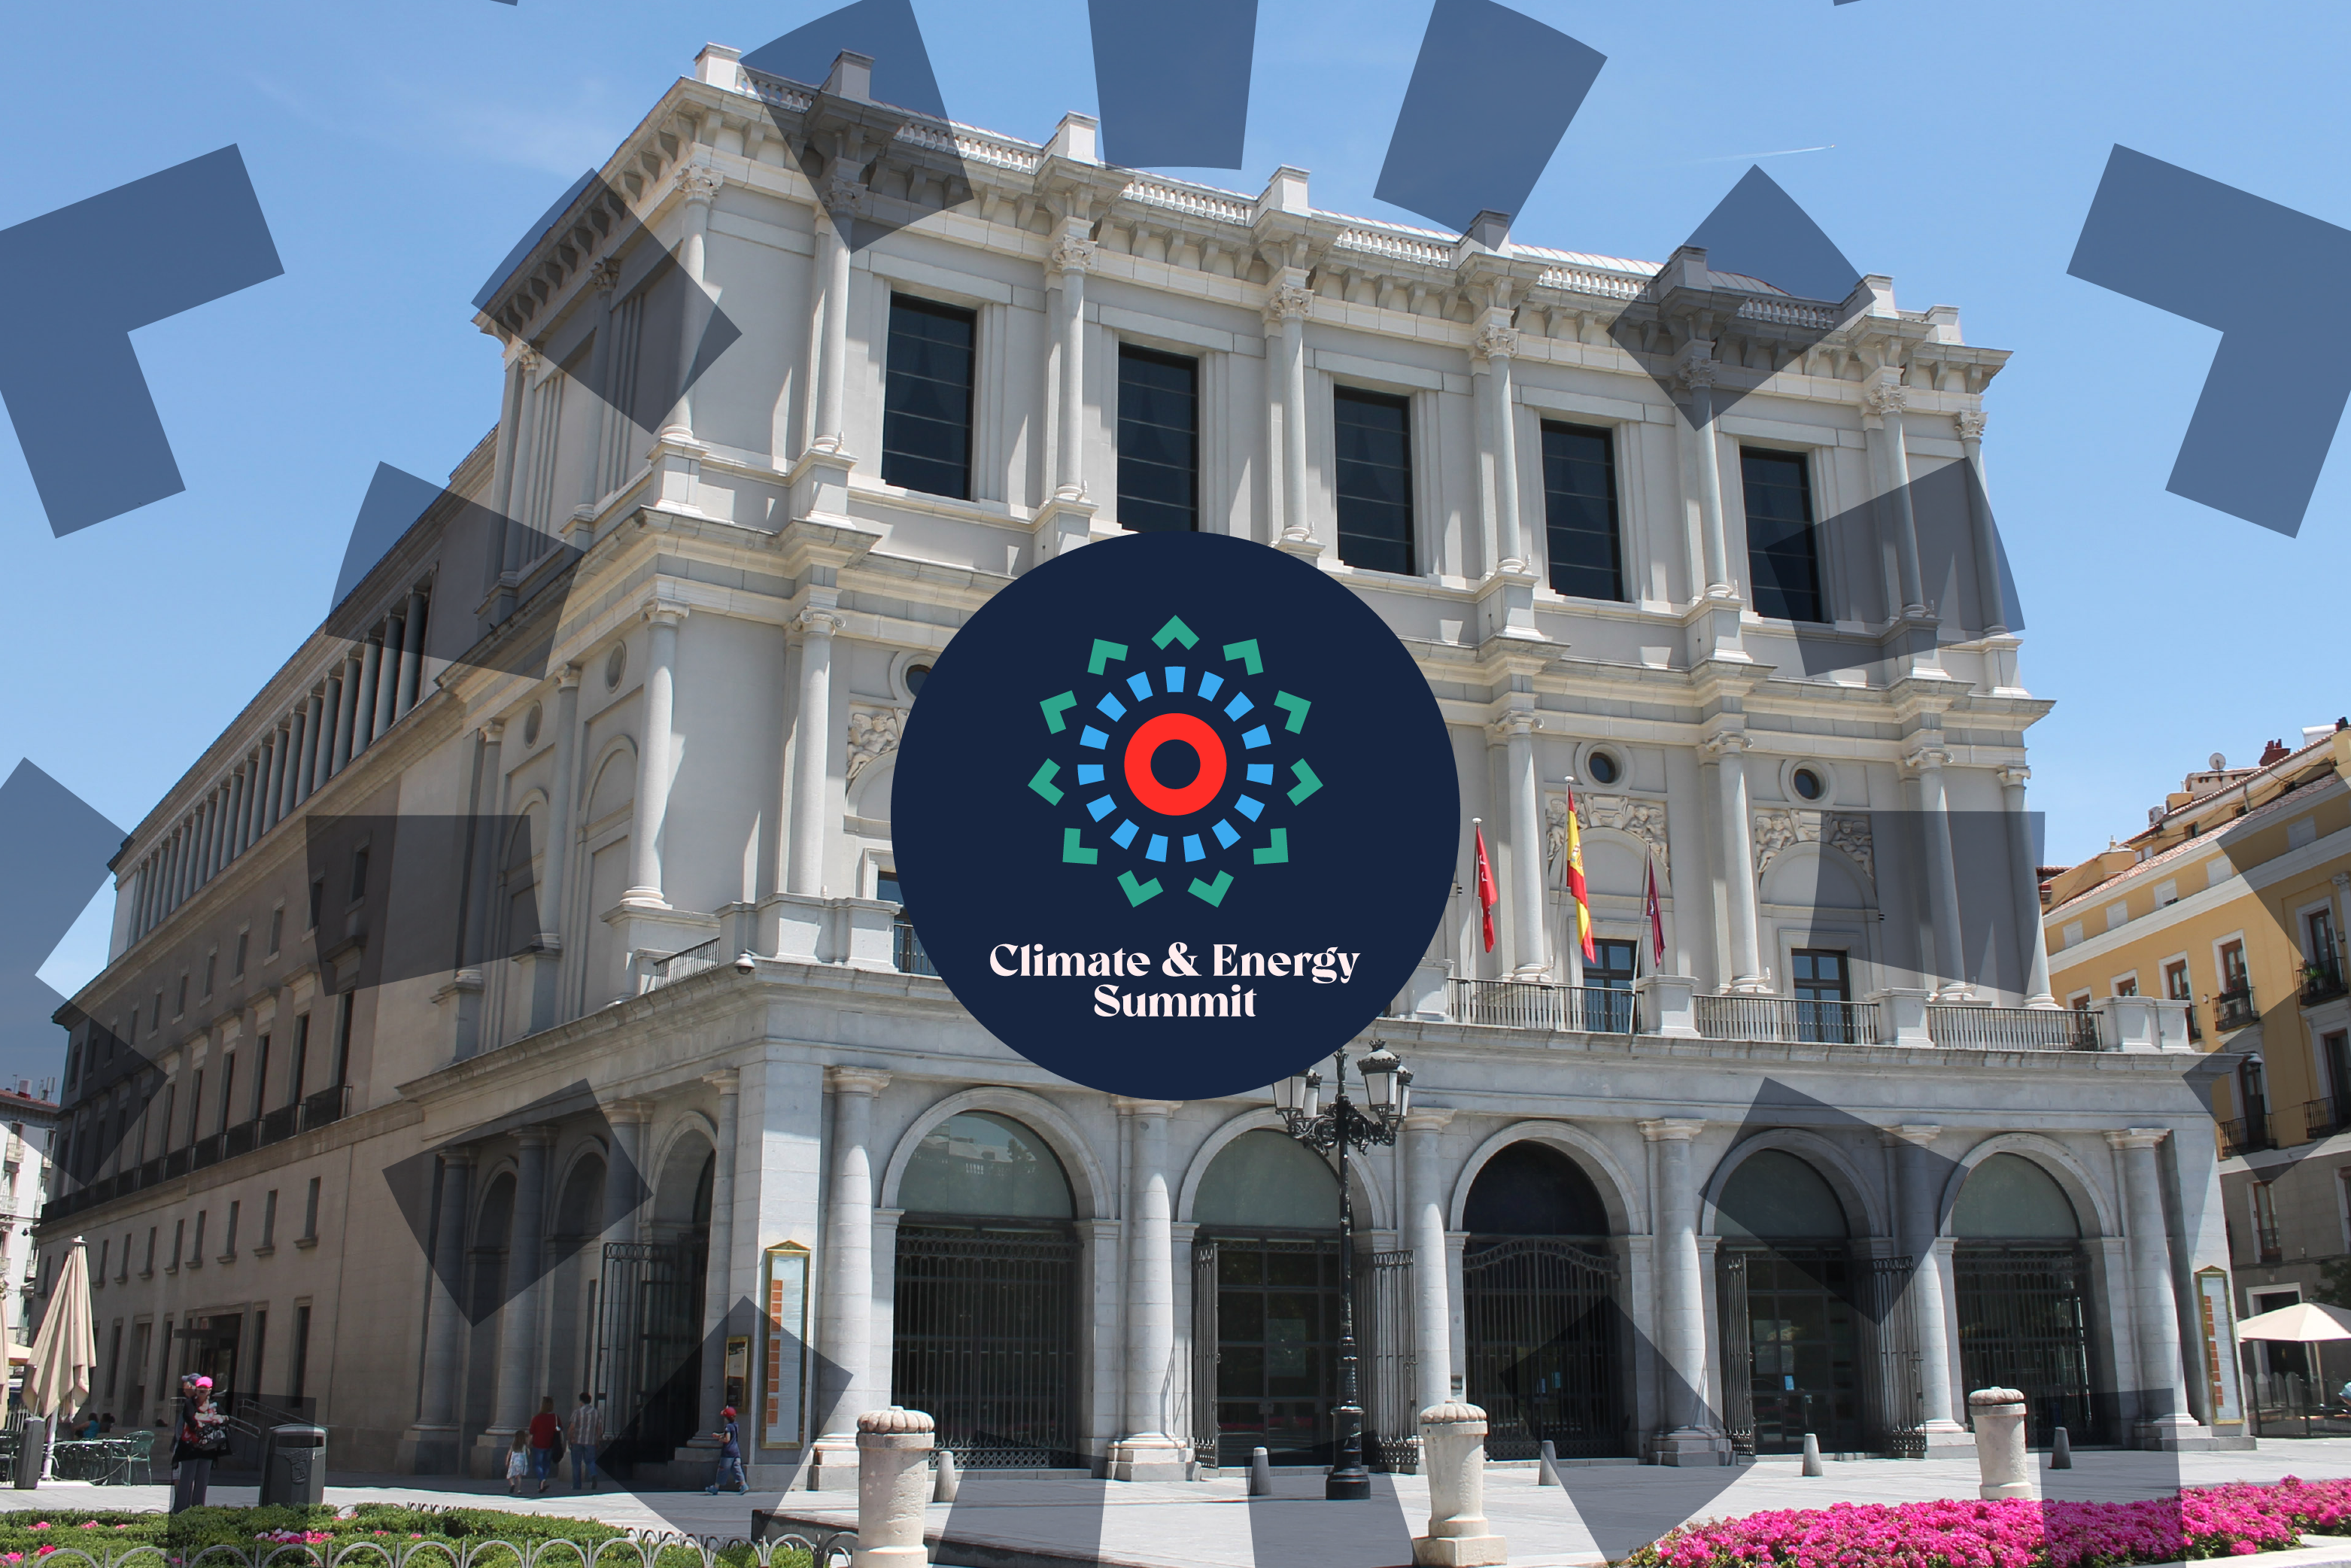 Teatro Real, donde tendrá lugar la Cumbre Internacional sobre Clima y Energía